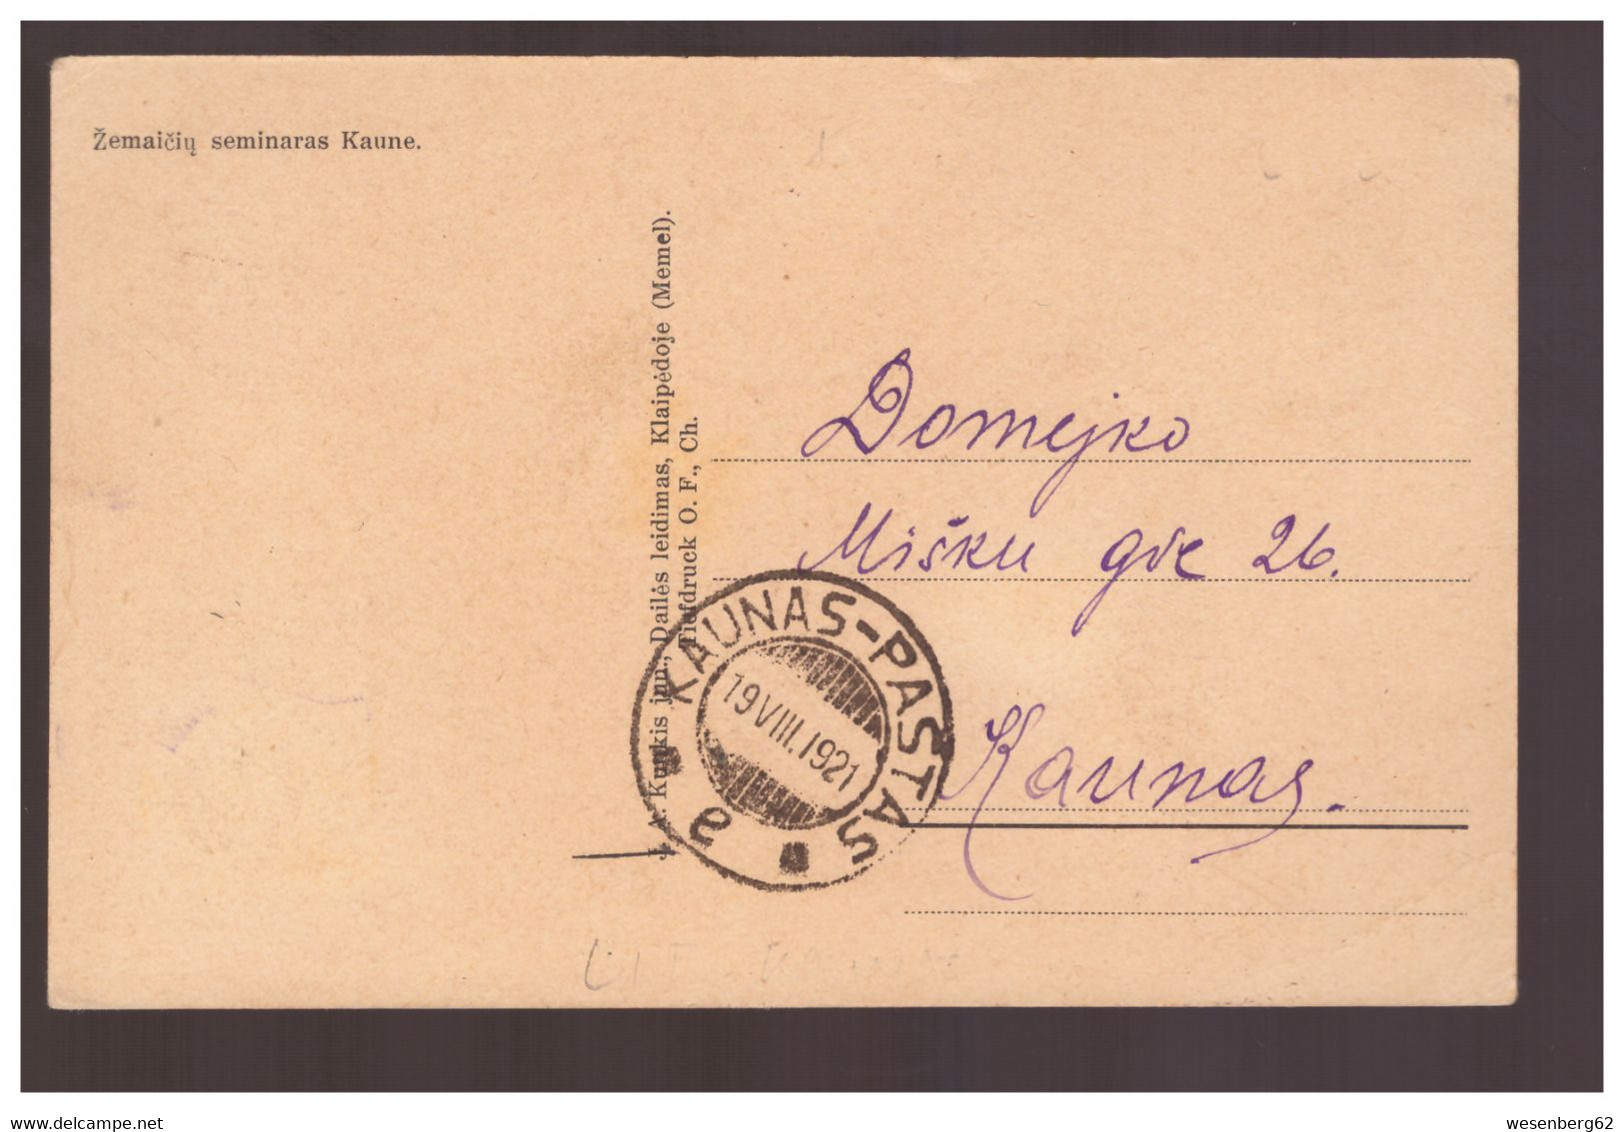 LITHUANIA Kowno  Zemaiciu Seminaras Kaune 1921 Old Postcard - Lithuania